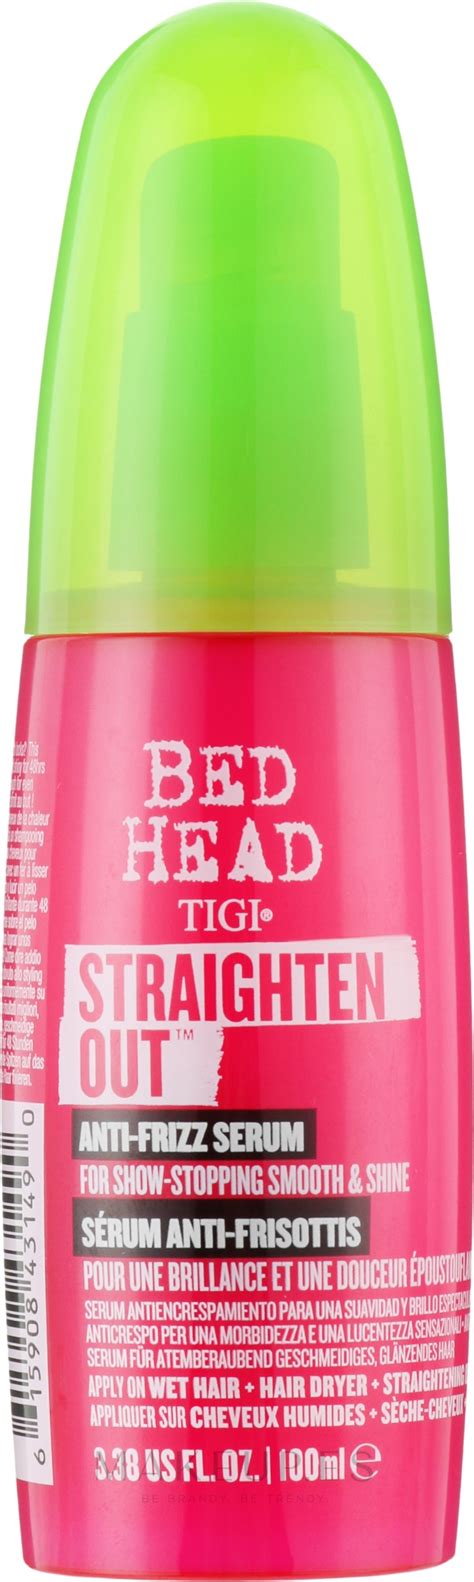 Tigi Bed Head Straighten Out Anti Frizz Serum Sérum